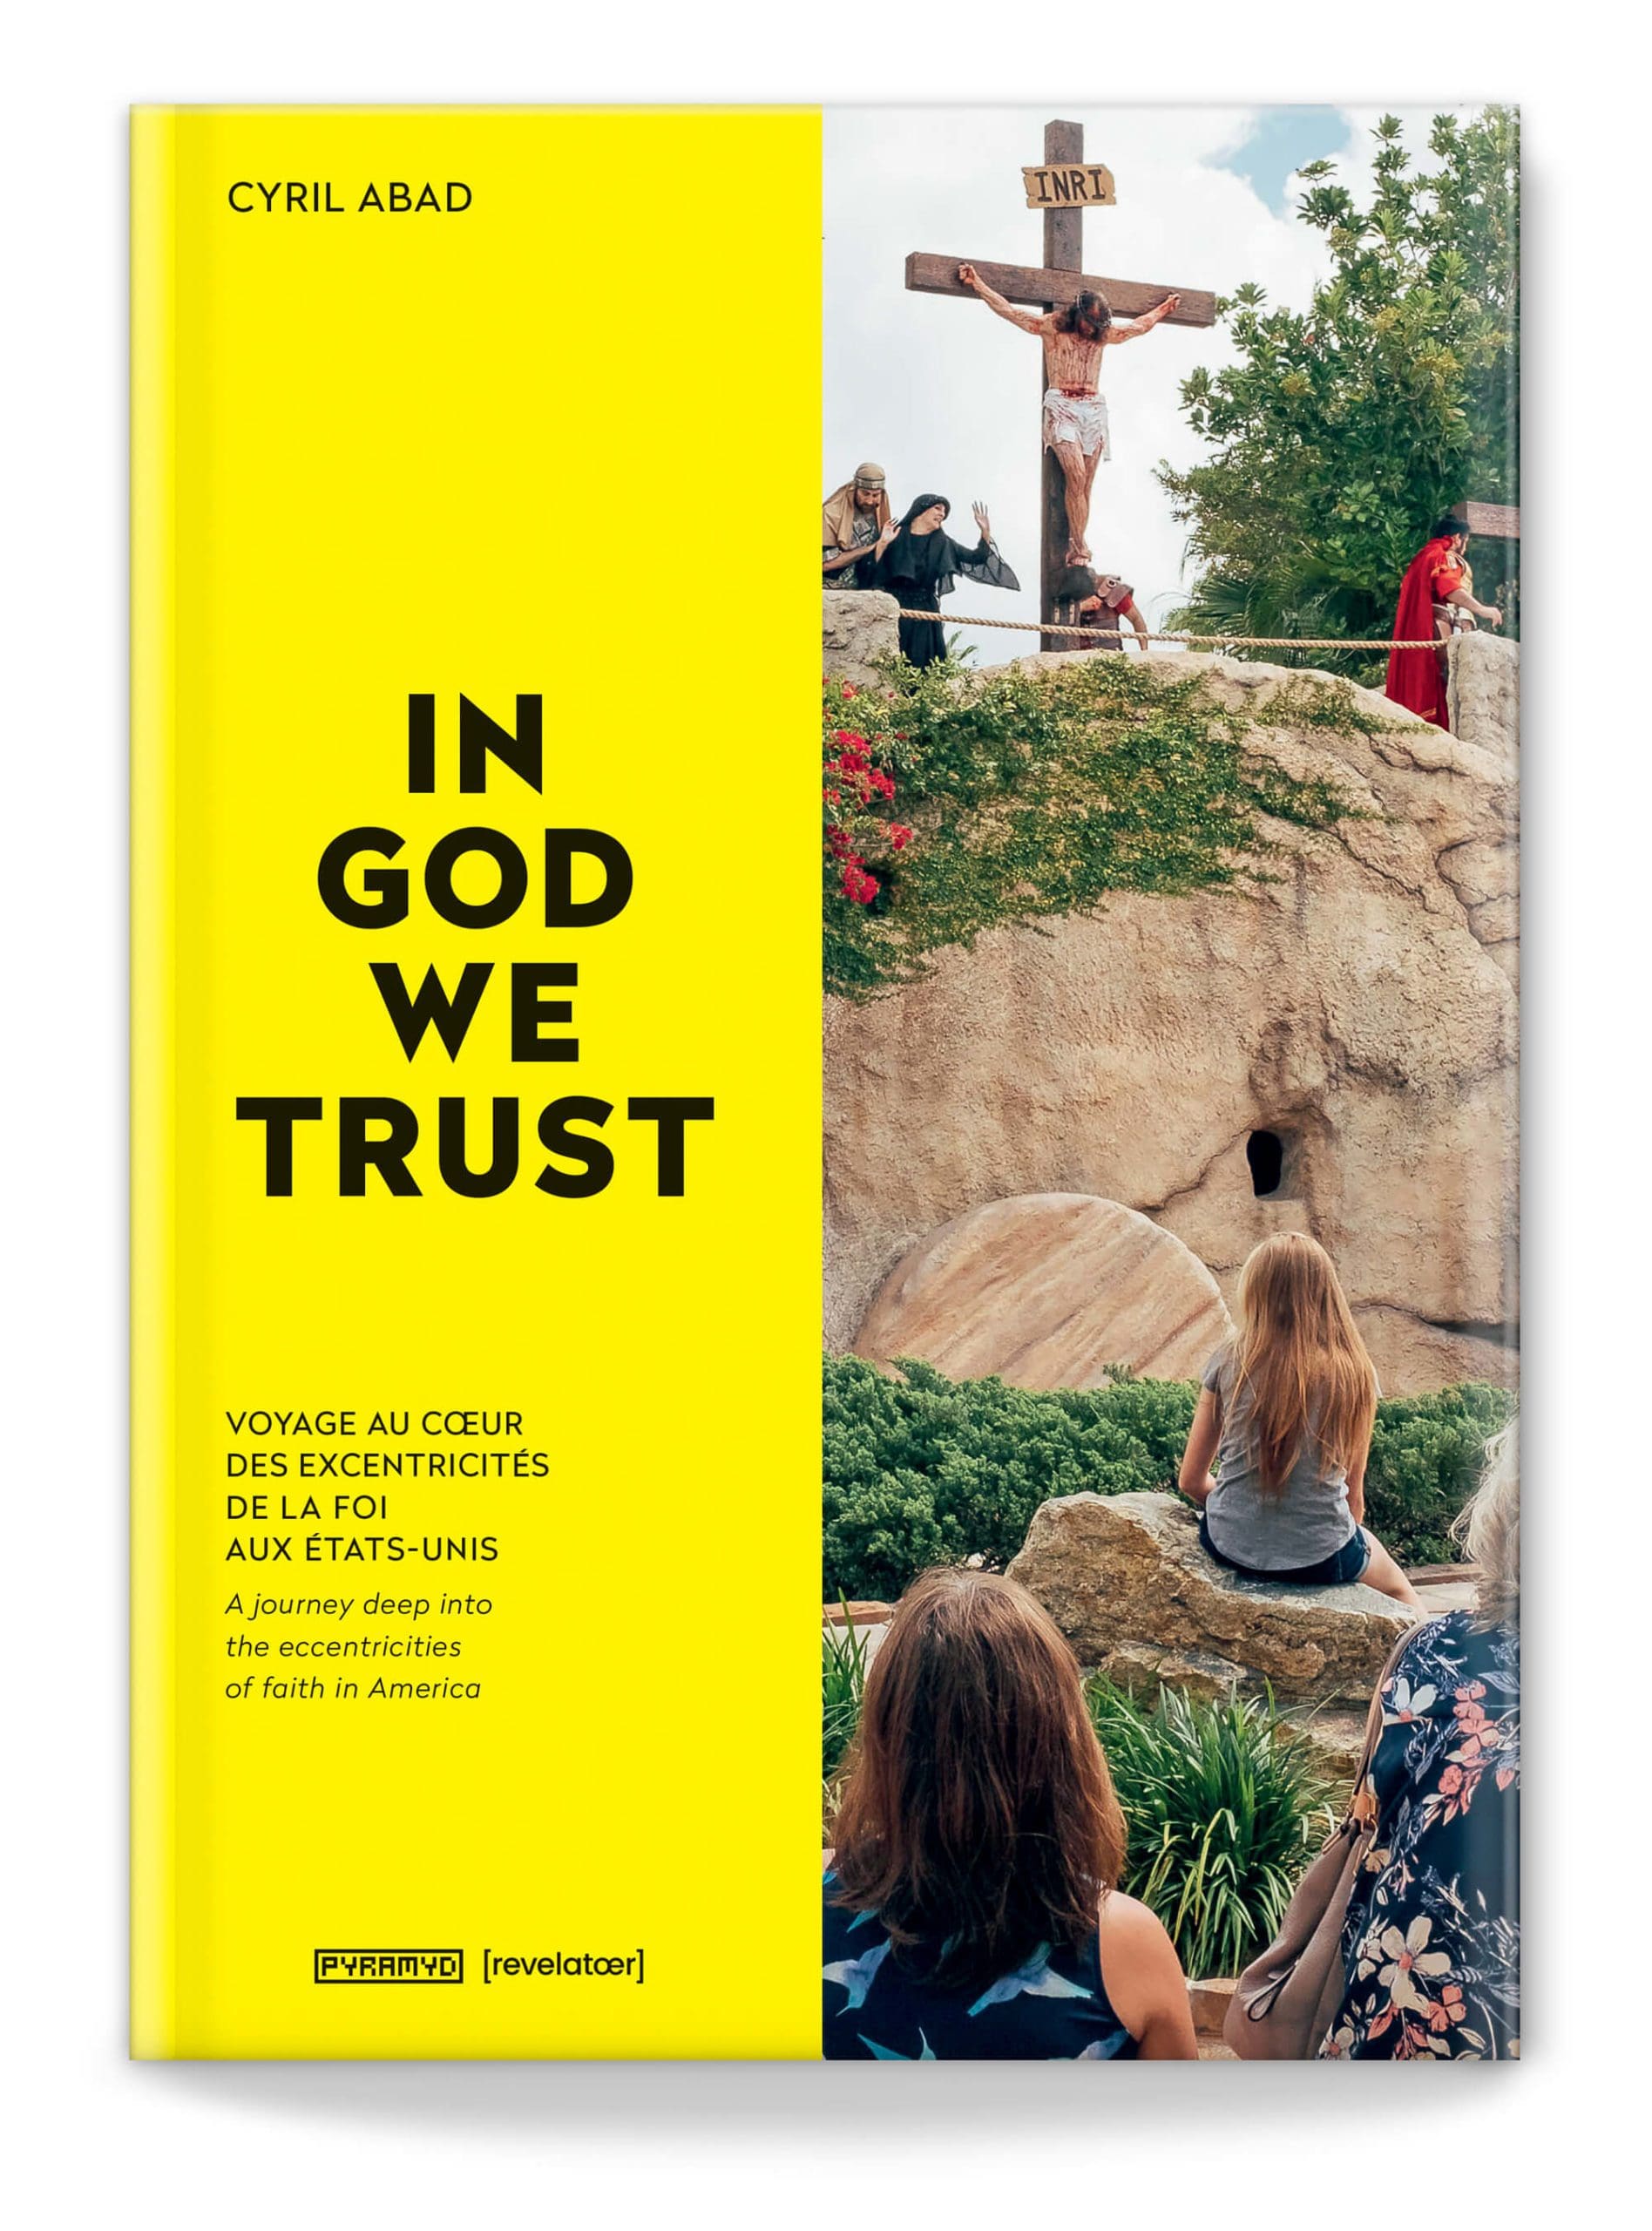 La couverture du livre In God we Trust, un reportage photo sur l'Amérique et le Christianisme dans la société, cover design IchetKar